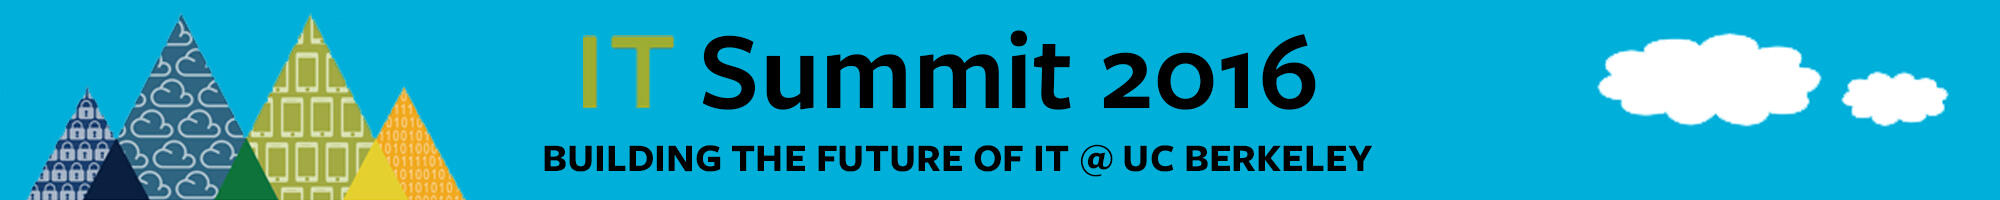 IT Summit header logo